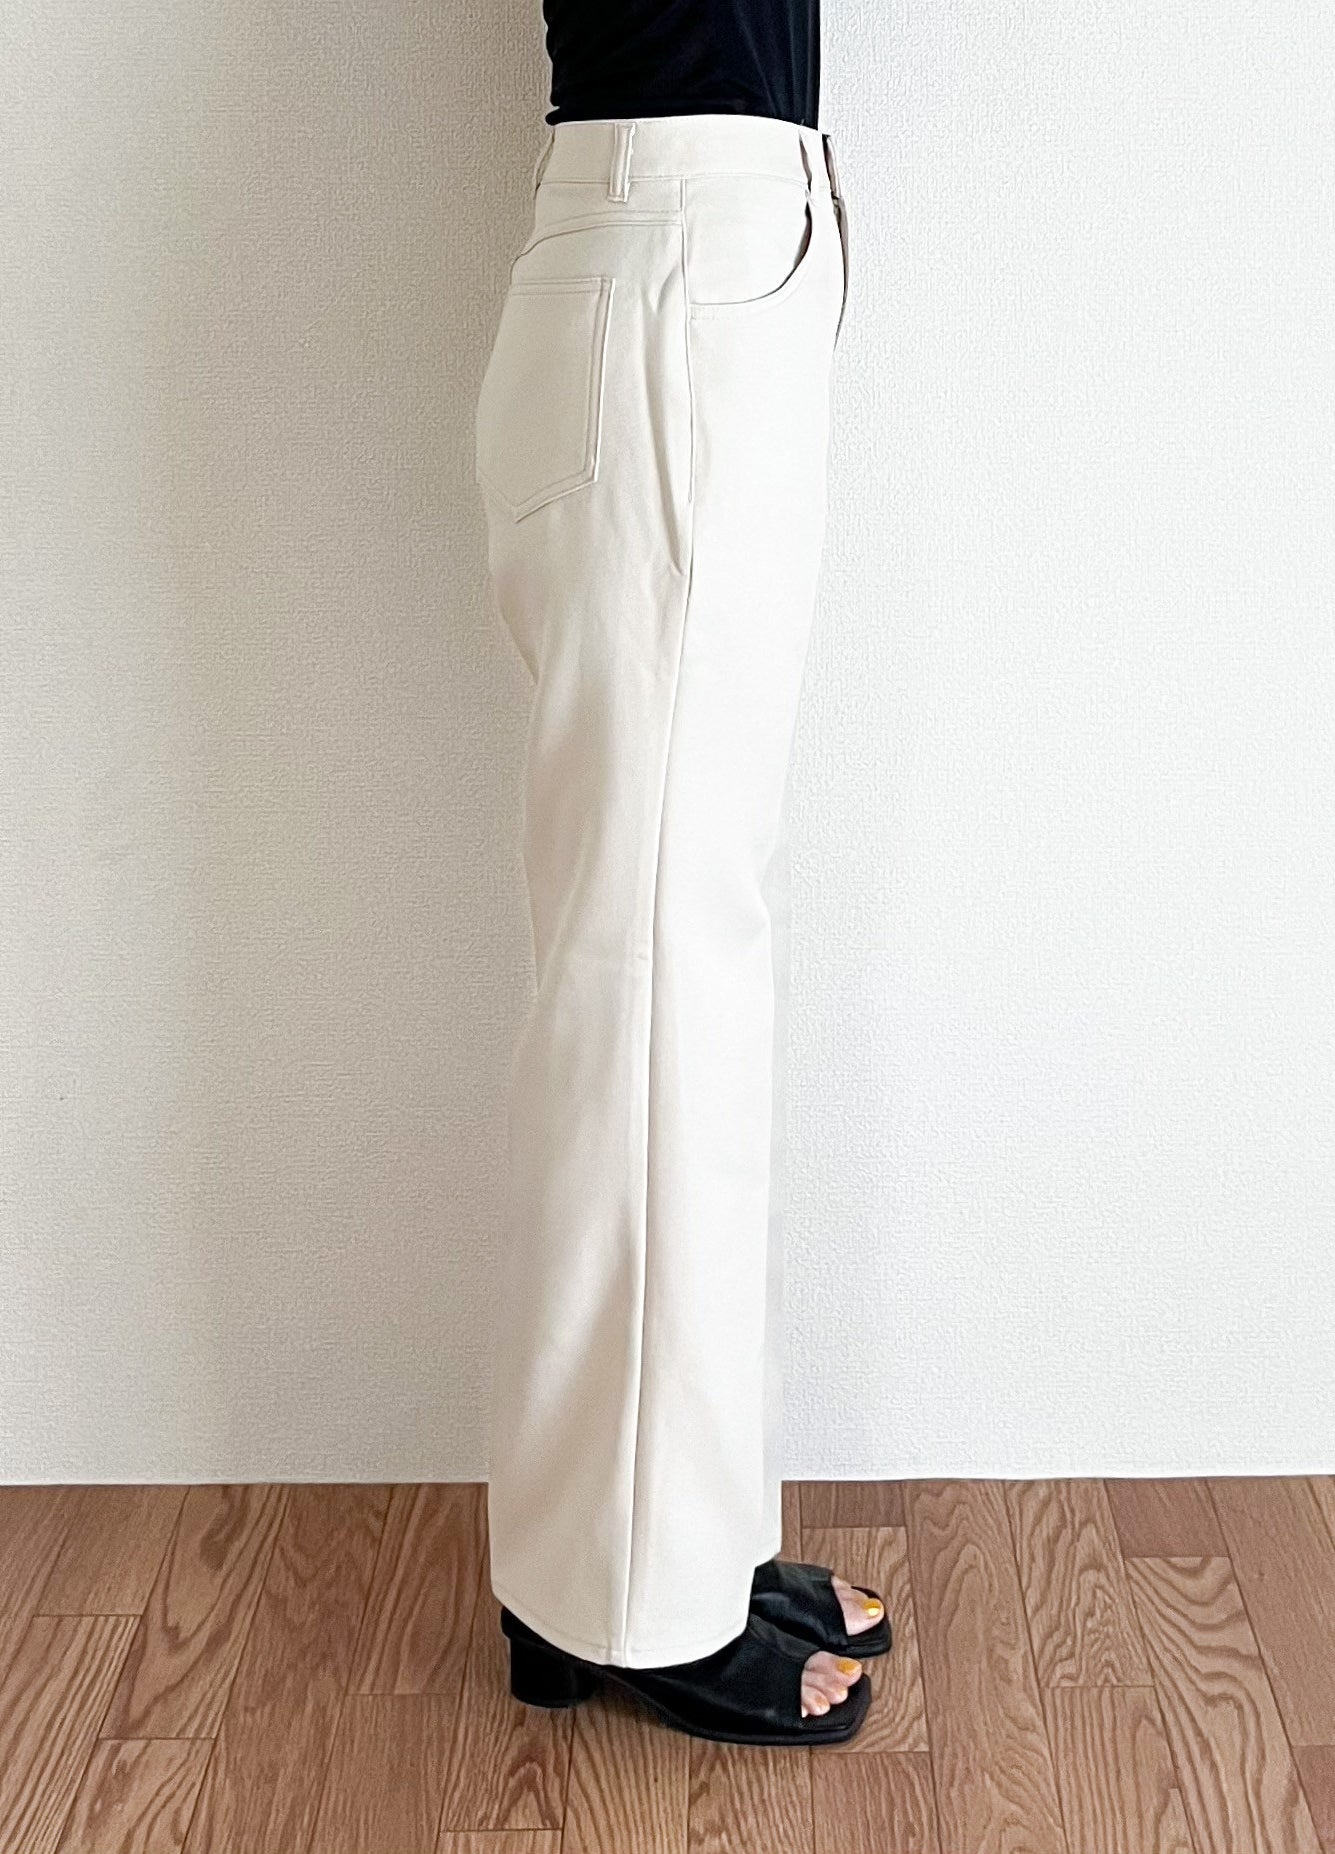 GU（ジーユー）のおすすめレディースファッション「センタープレスストレートパンツRS」脚長効果でスッキリ細見え